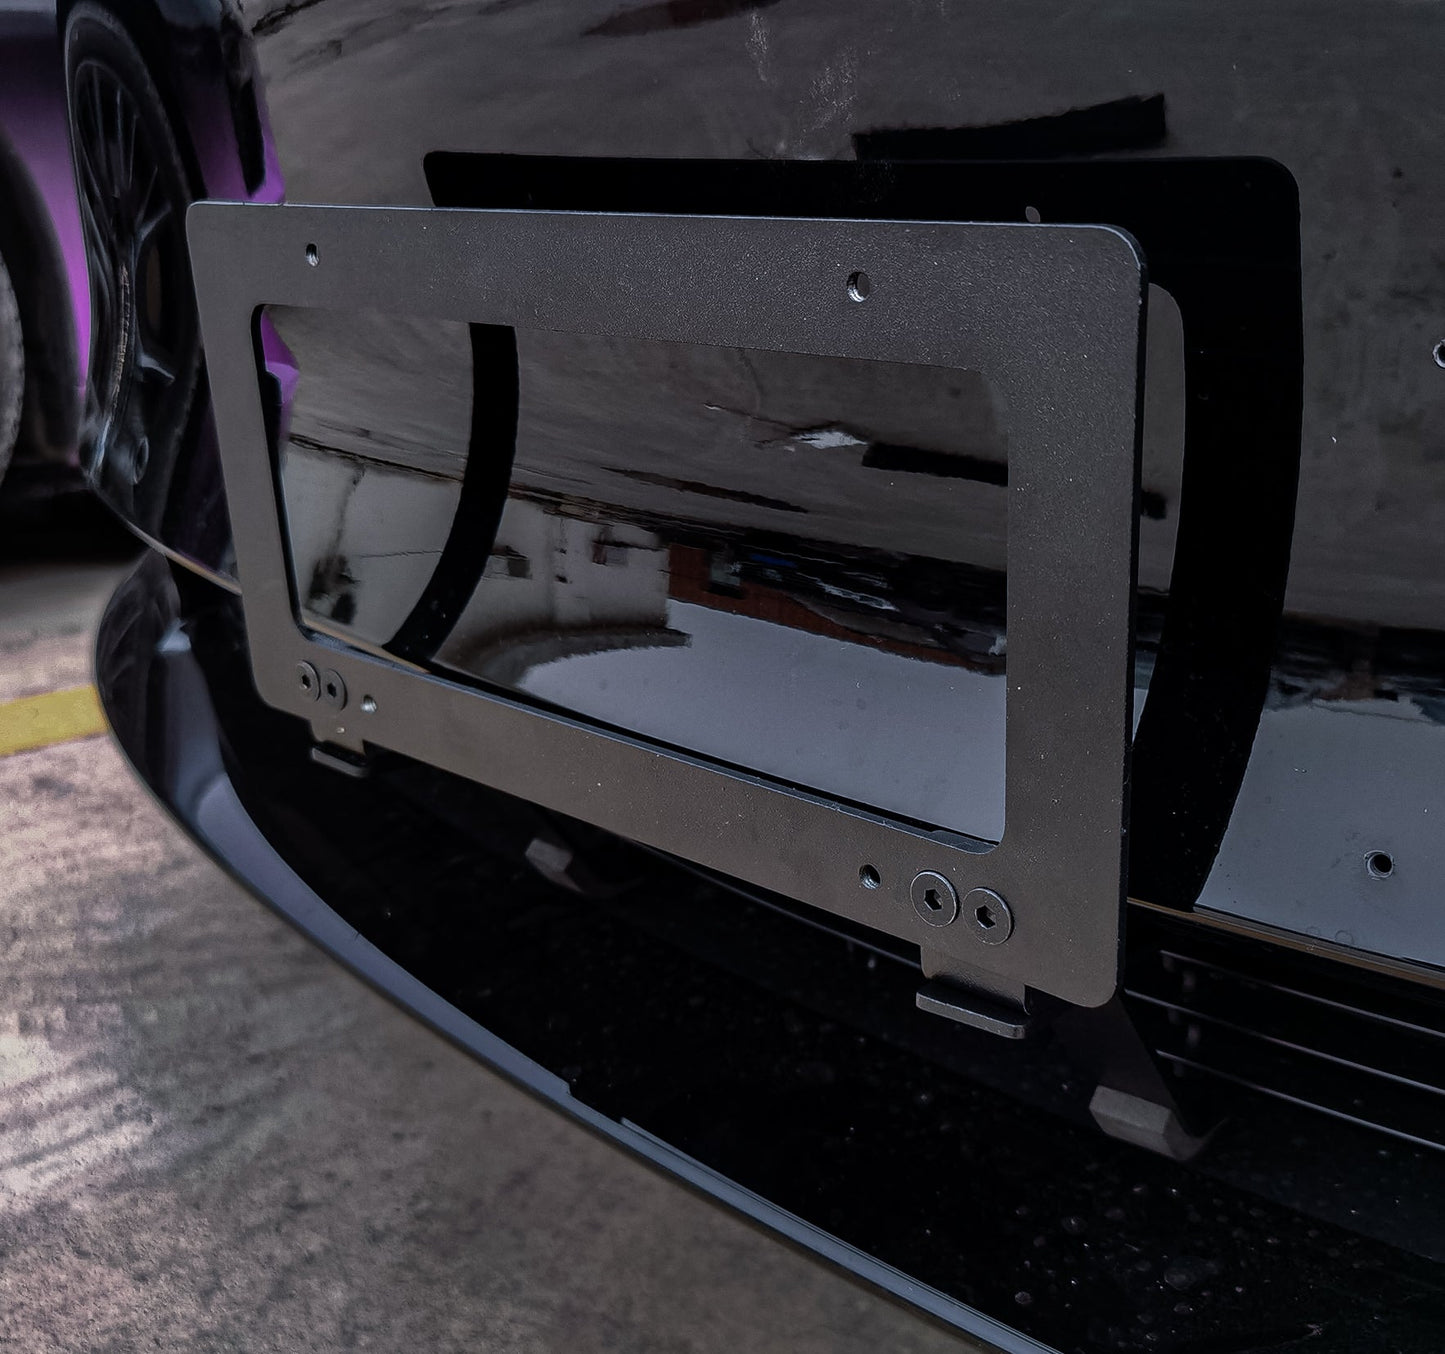 Tesla License Plate Frame for Model 3 Model Y 2021,License Plate Cover Accessories fit Standard US(Matte Black)